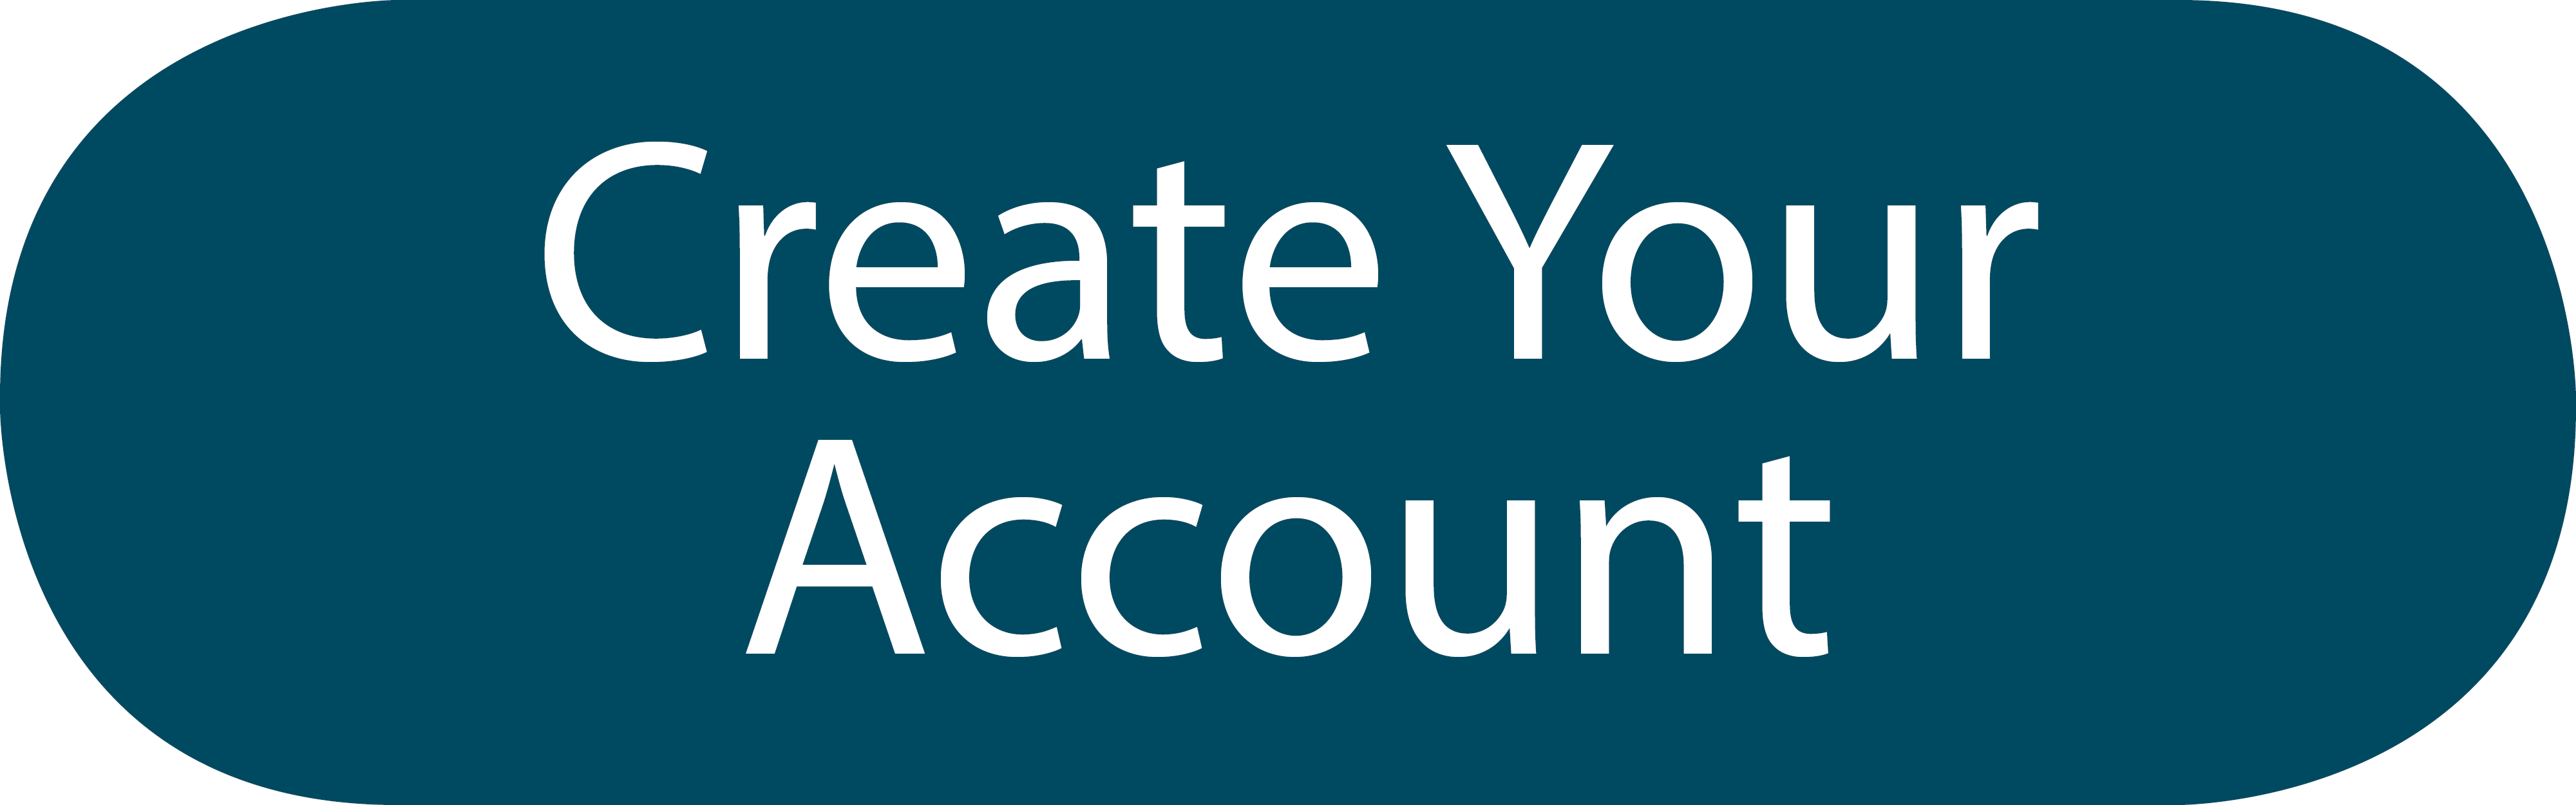 Create An Account